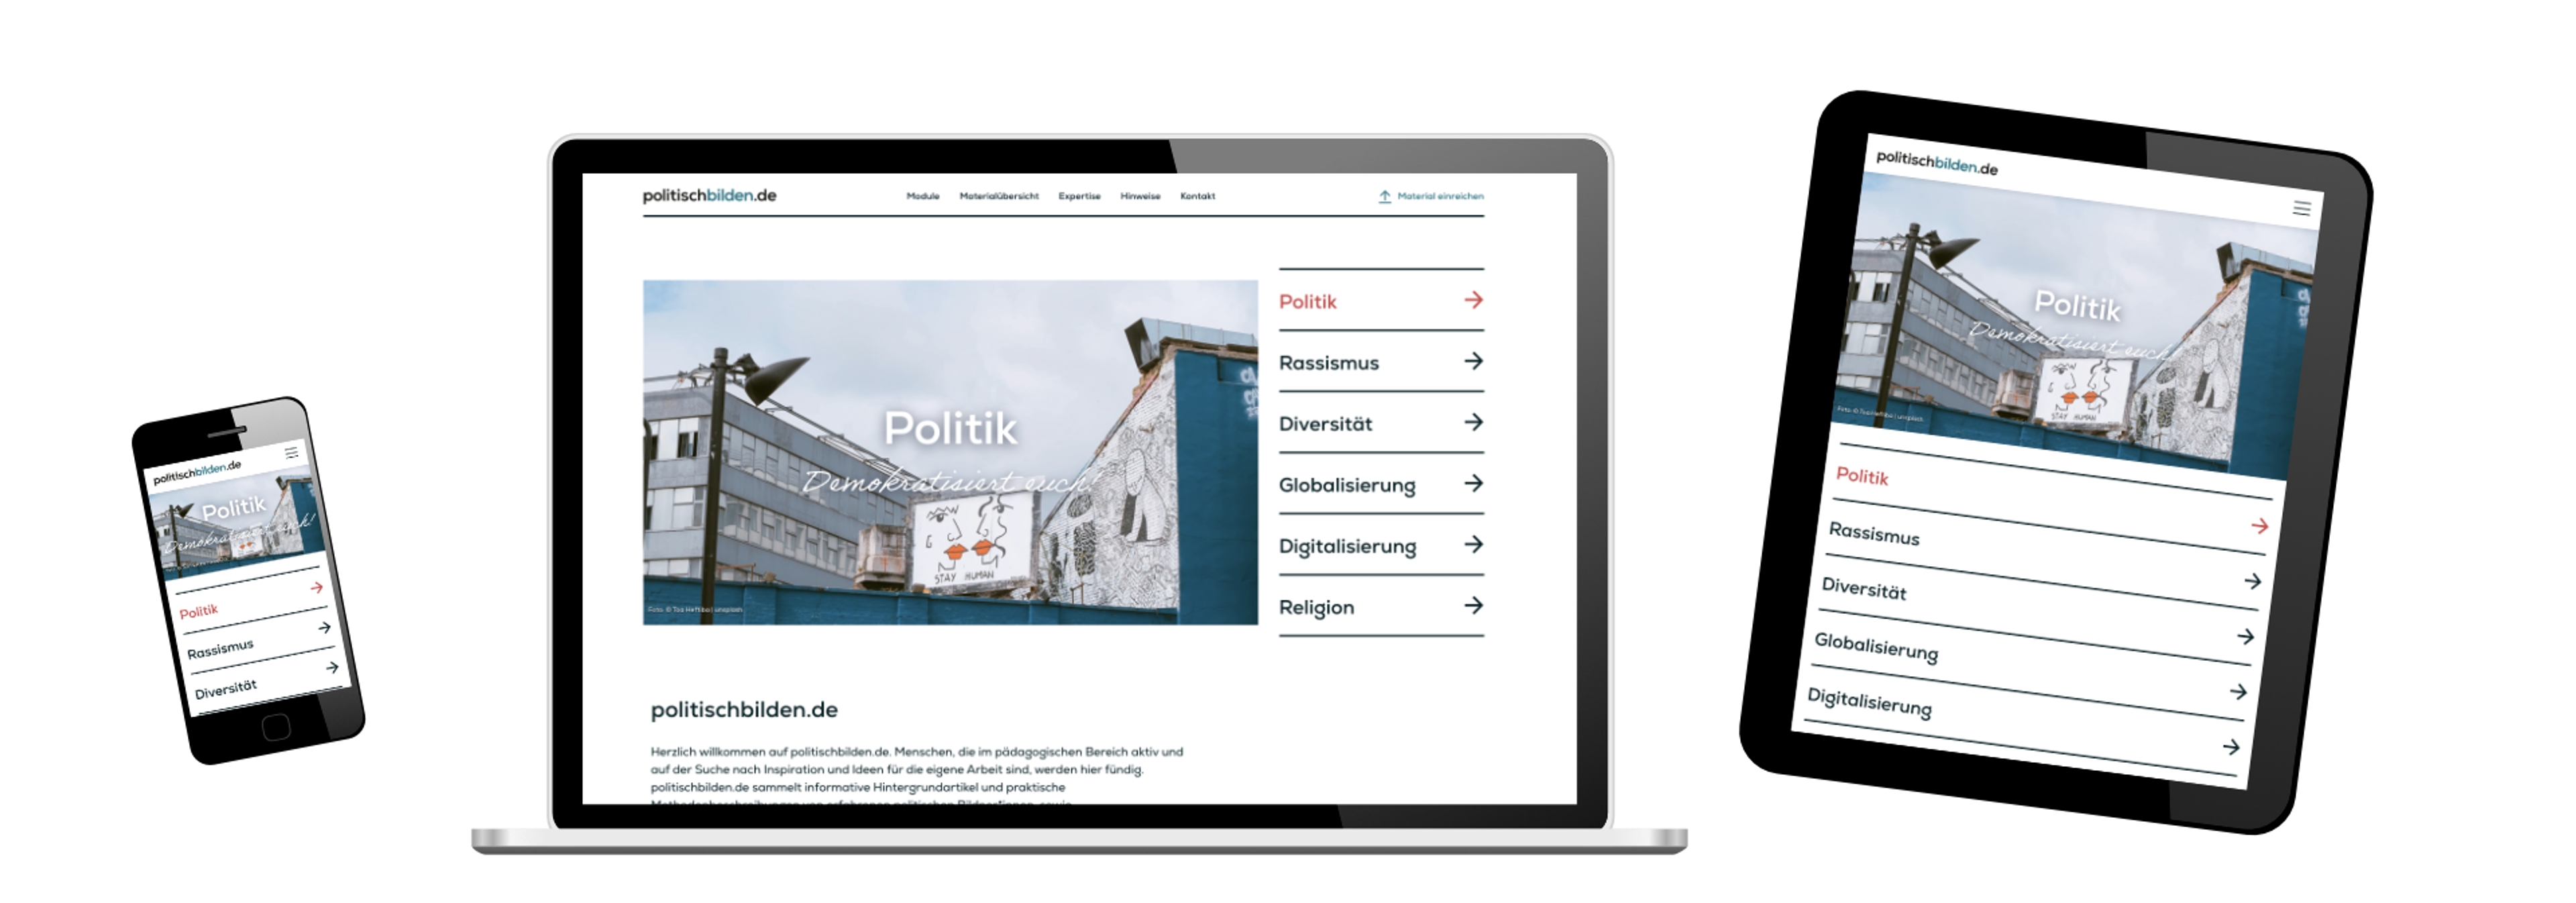 Preview of the website politischbilden.de on different devices.